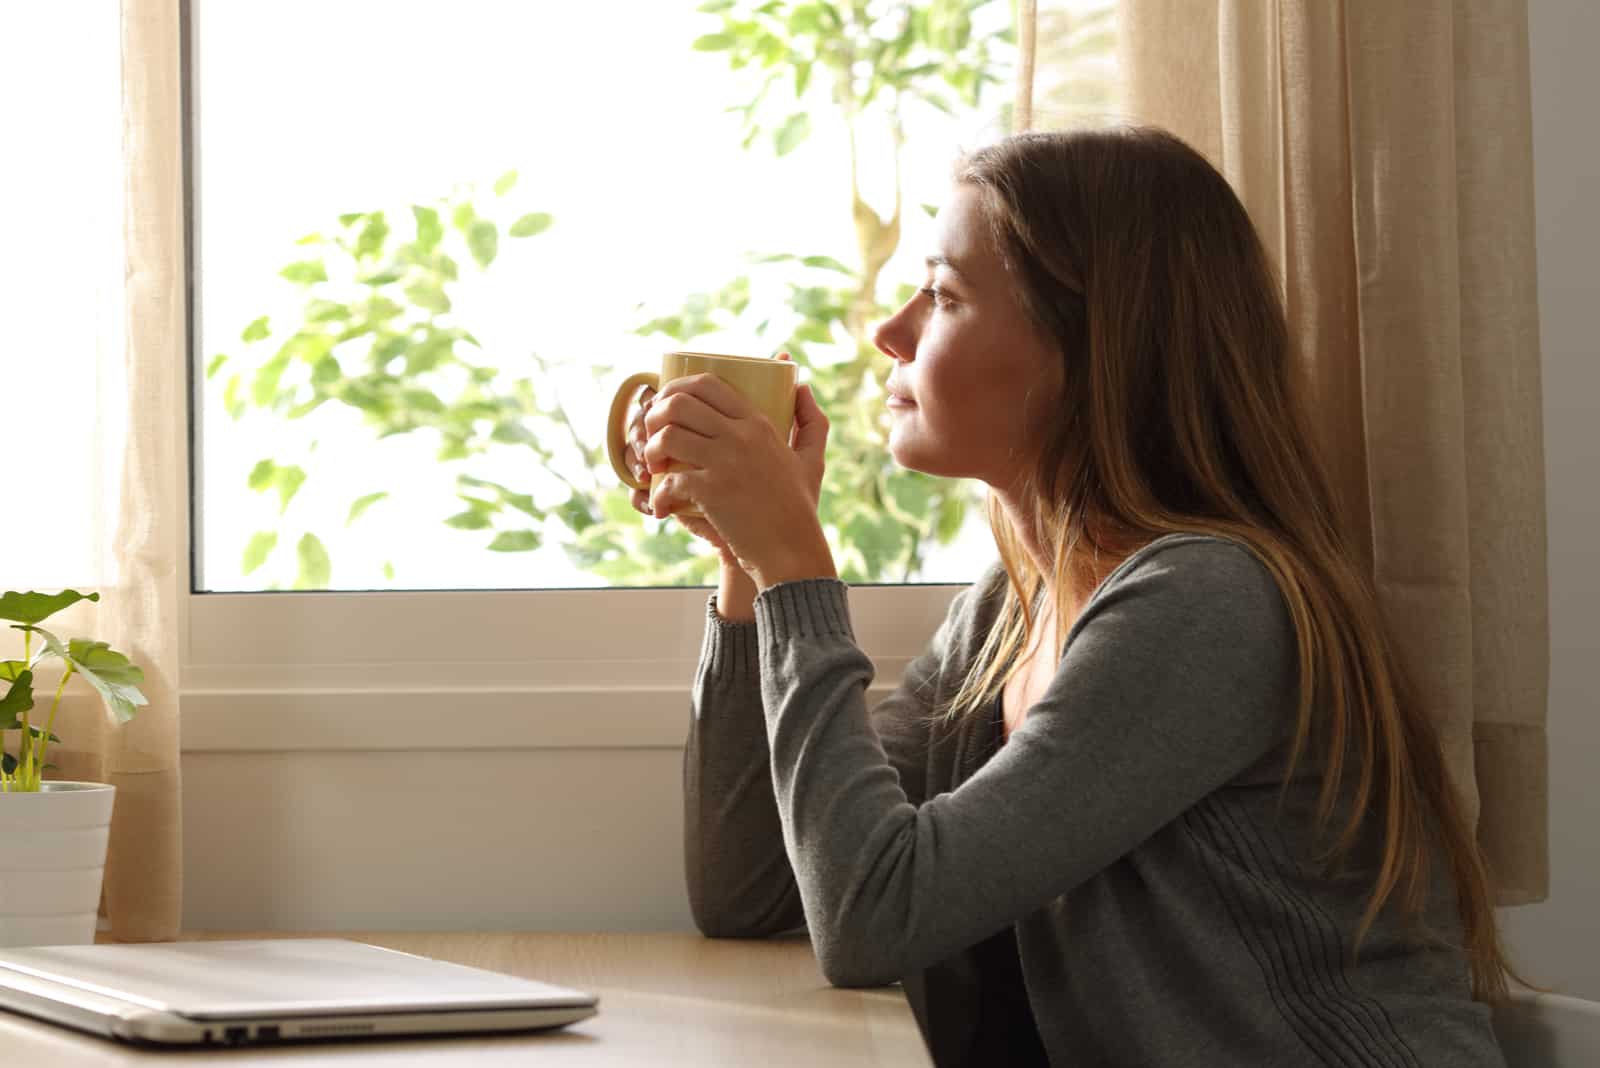 Una mujer imaginaria sentada junto a la ventana con una taza en la mano.